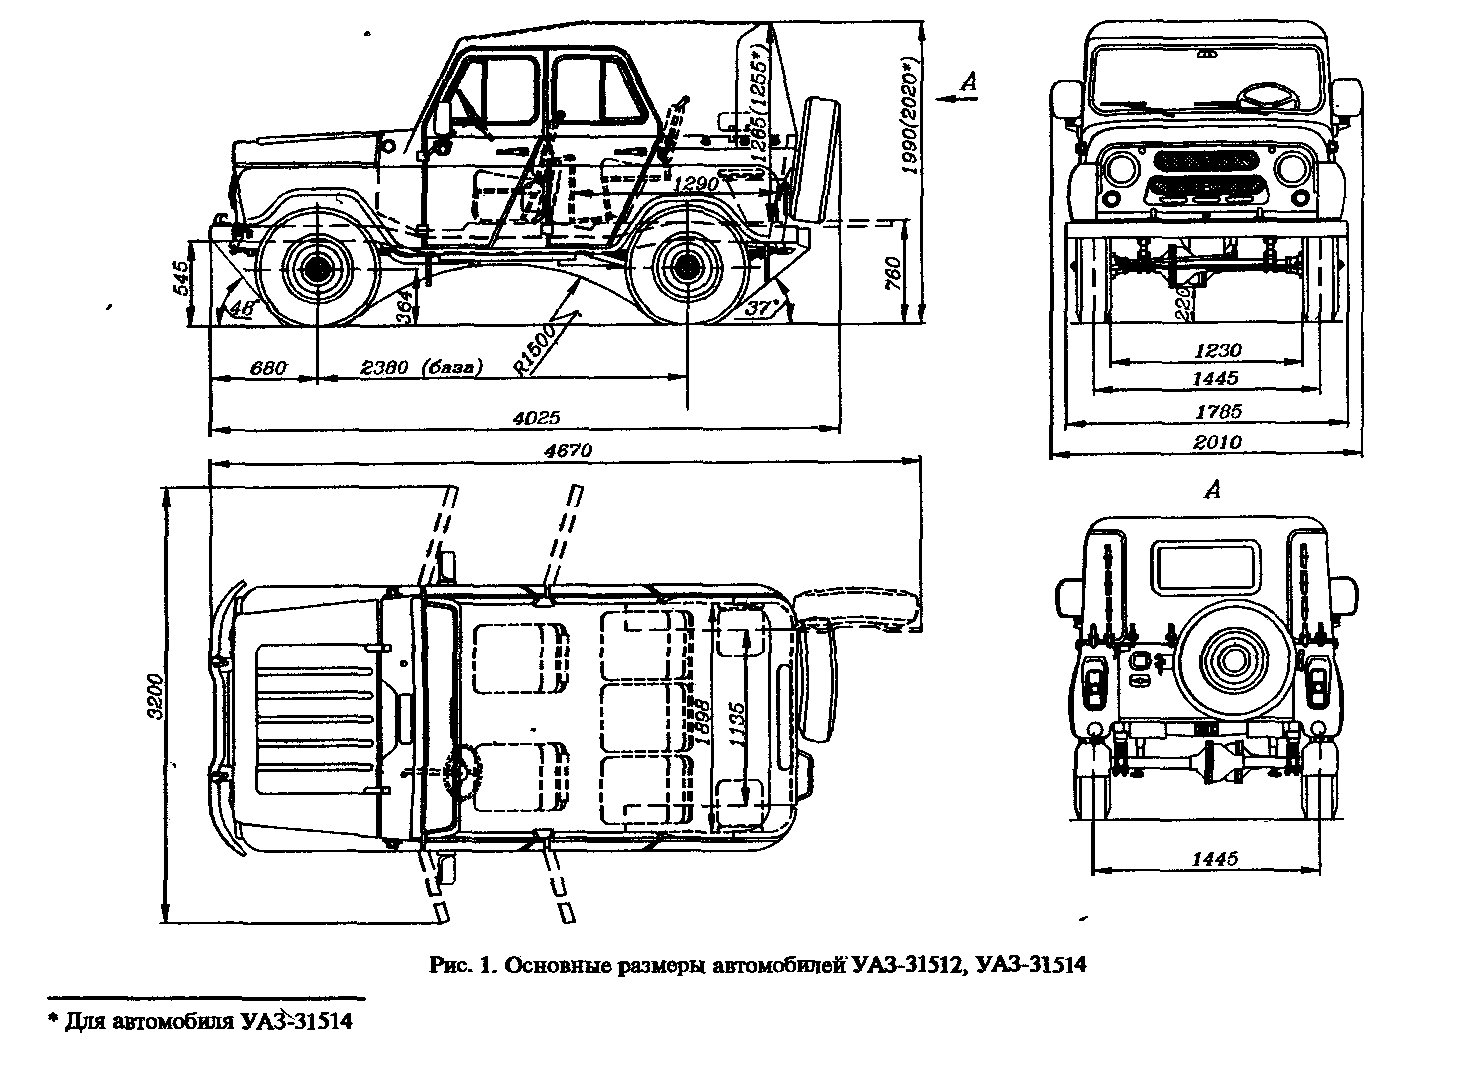 Основные размеры автомобилей УАЗ-31512, УАЗ-31514